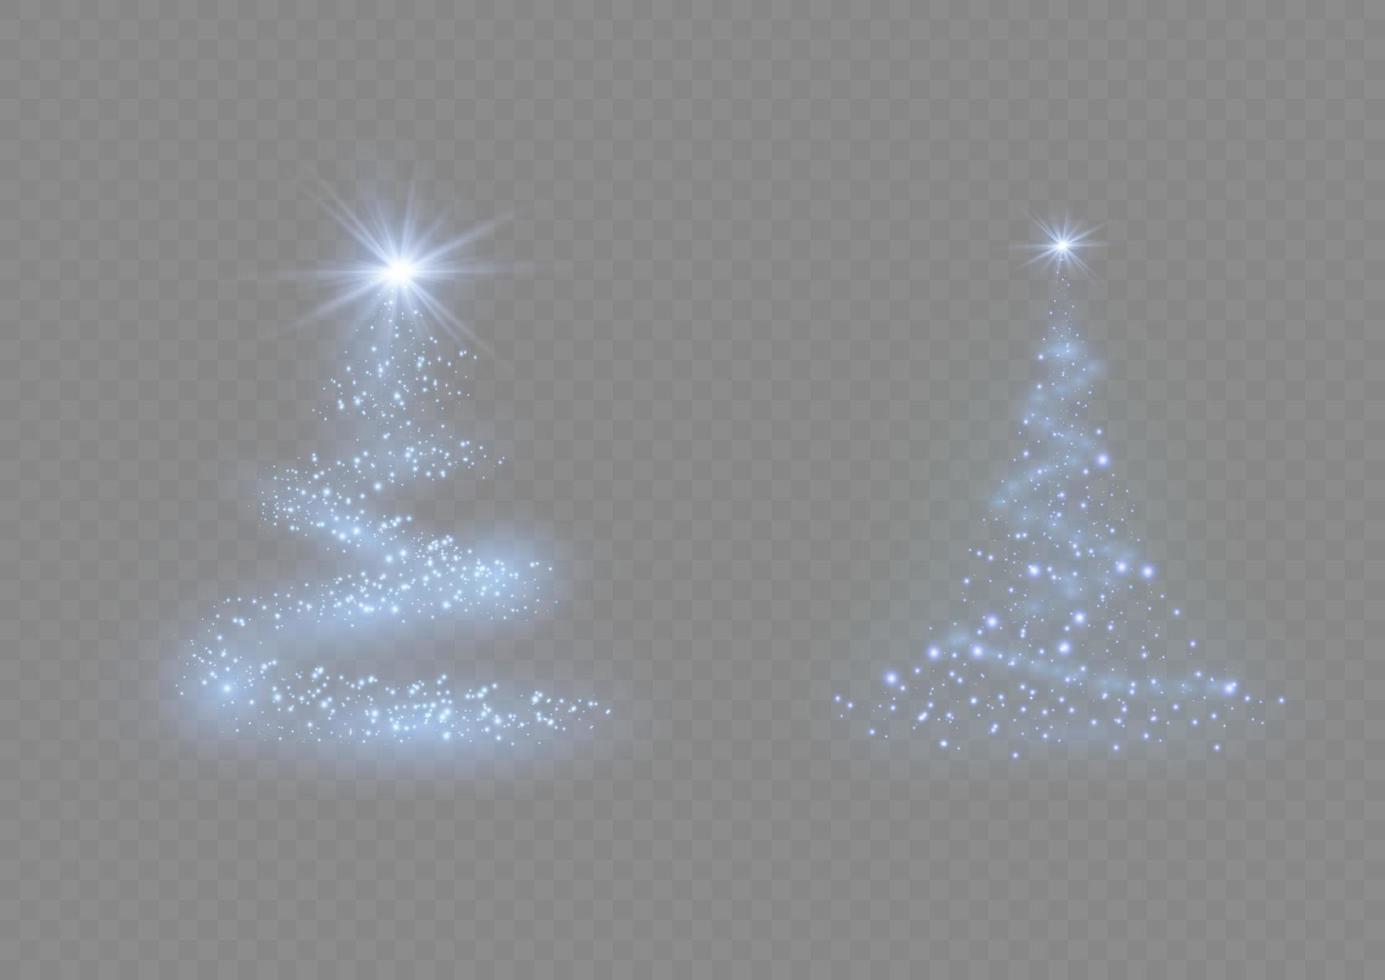 weihnachtsbaum aus hellem vektorhintergrund. goldener weihnachtsbaum als symbol für ein frohes neues jahr, ein frohes weihnachtsfest. goldene Lichtdekoration. hell glänzend vektor